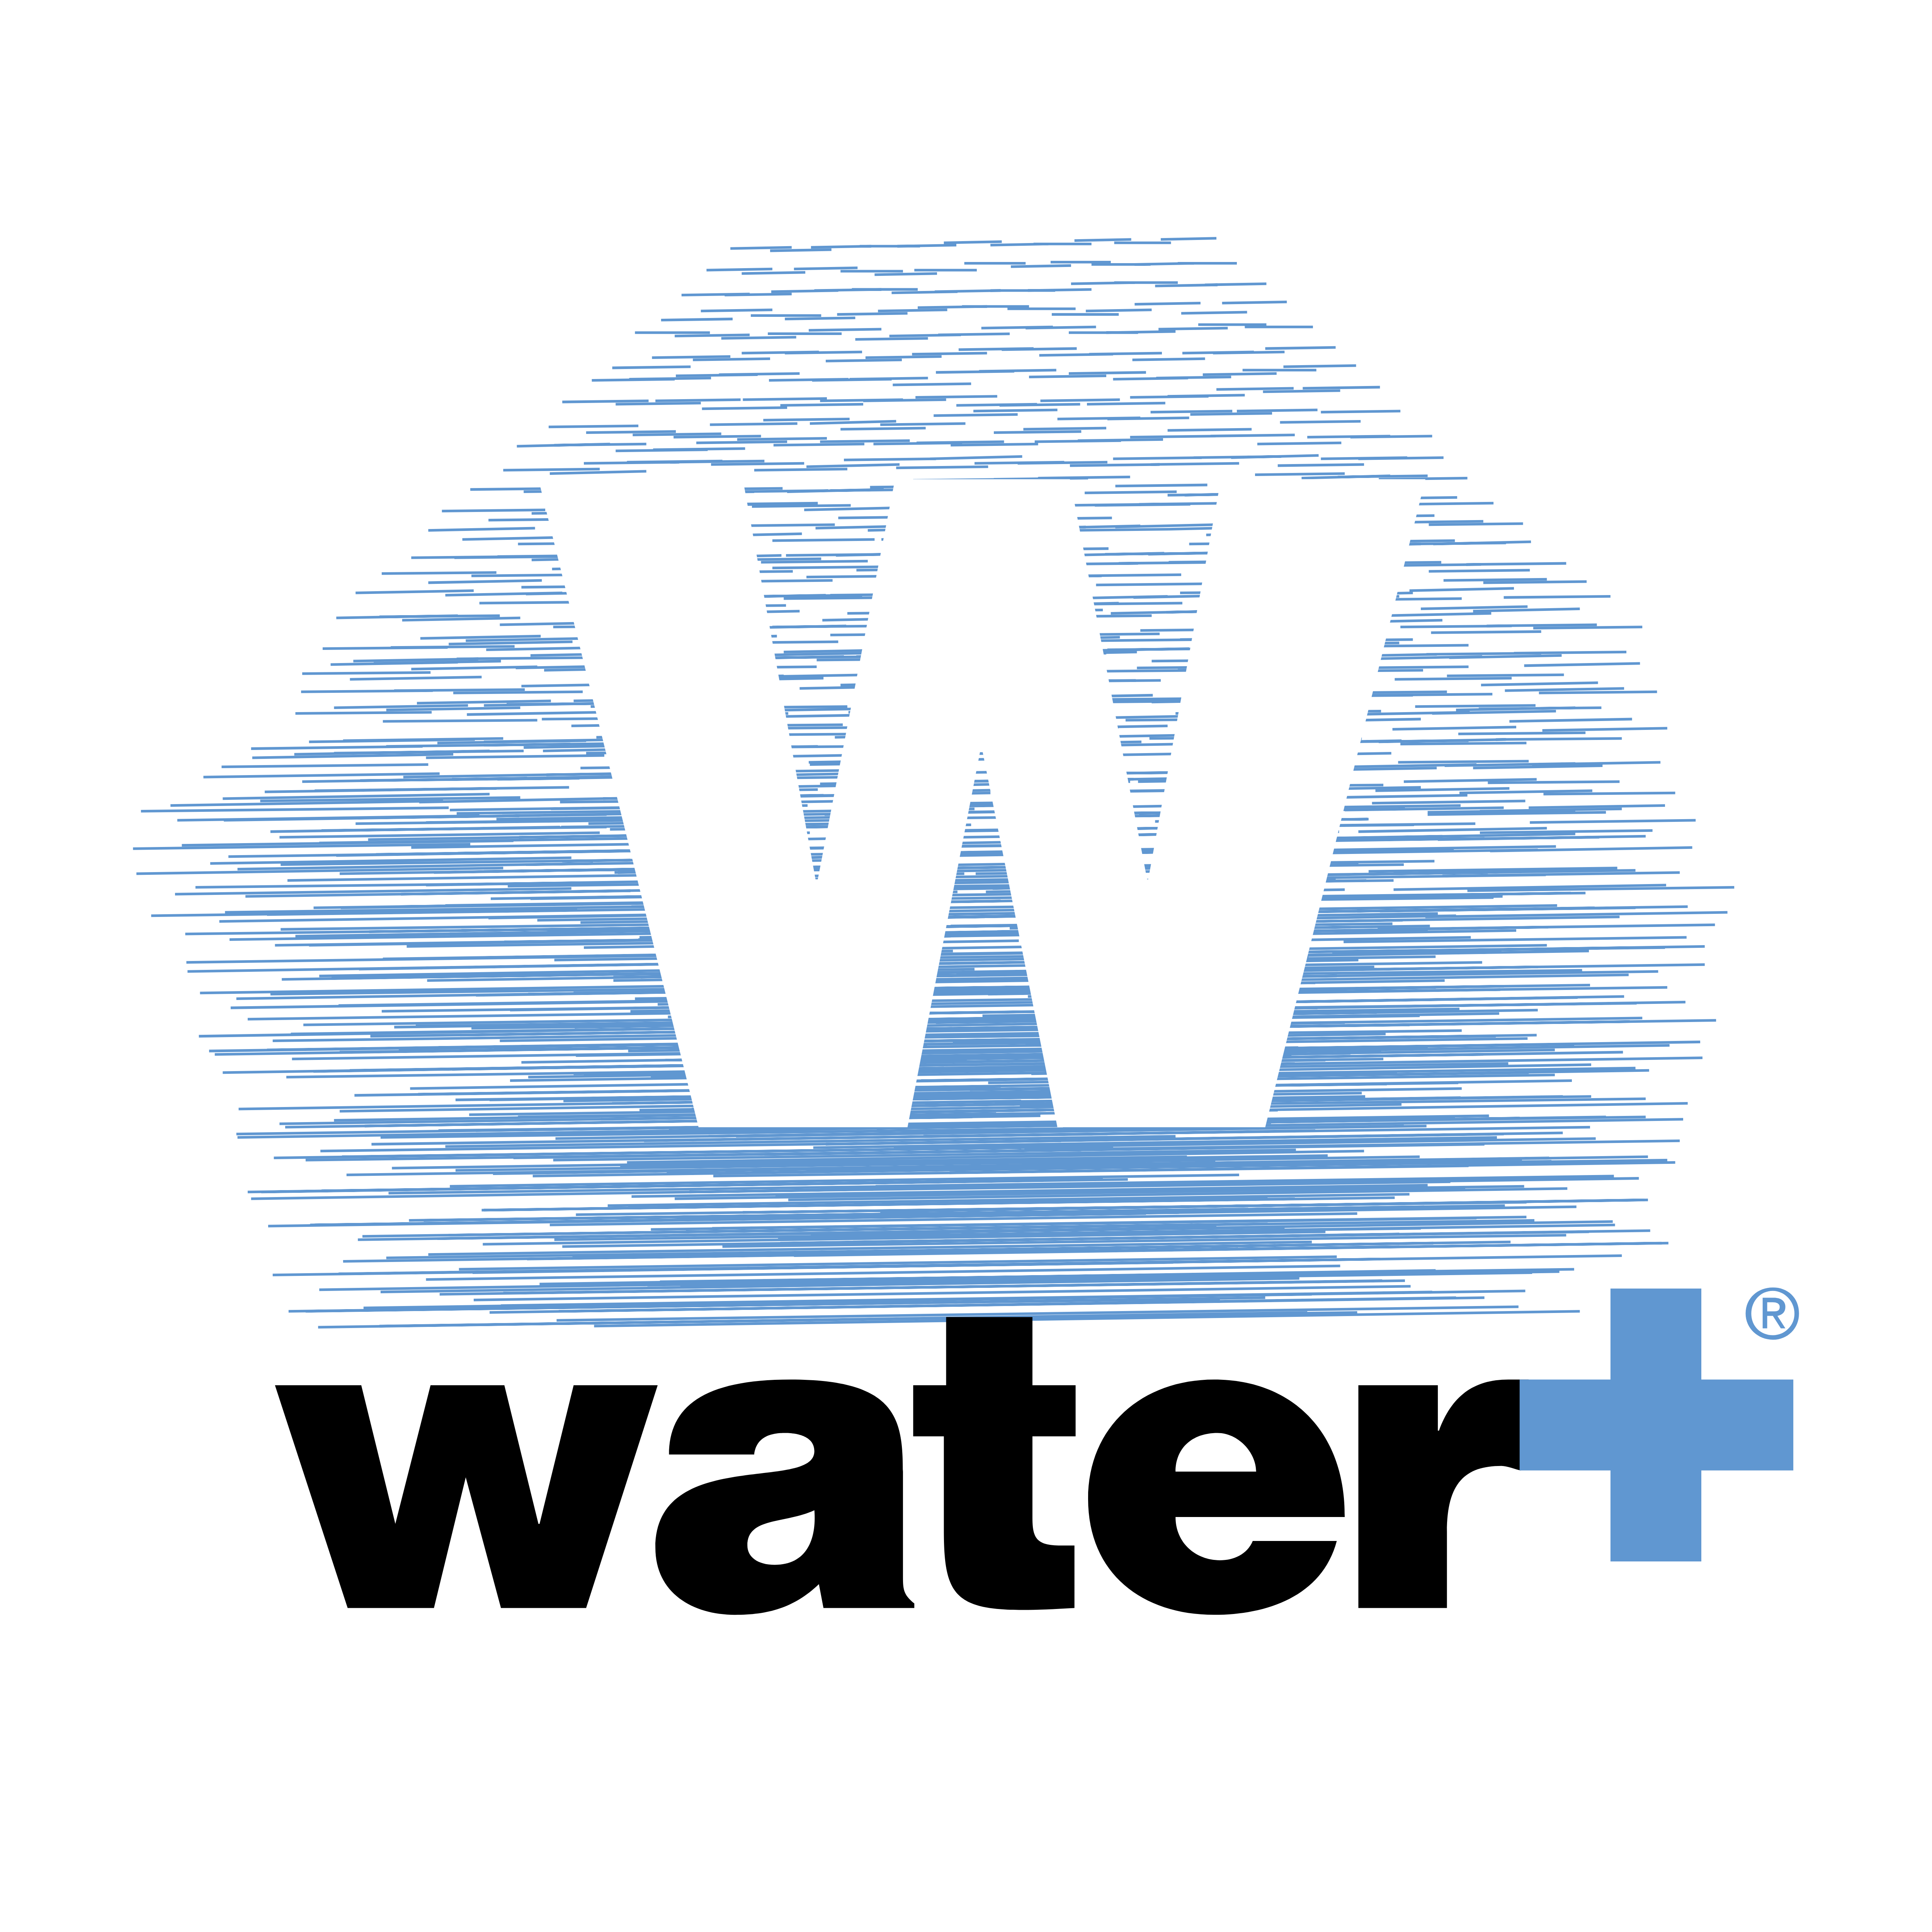 Álbumes 101+ Foto Avatar The Way Of Water Logo El último